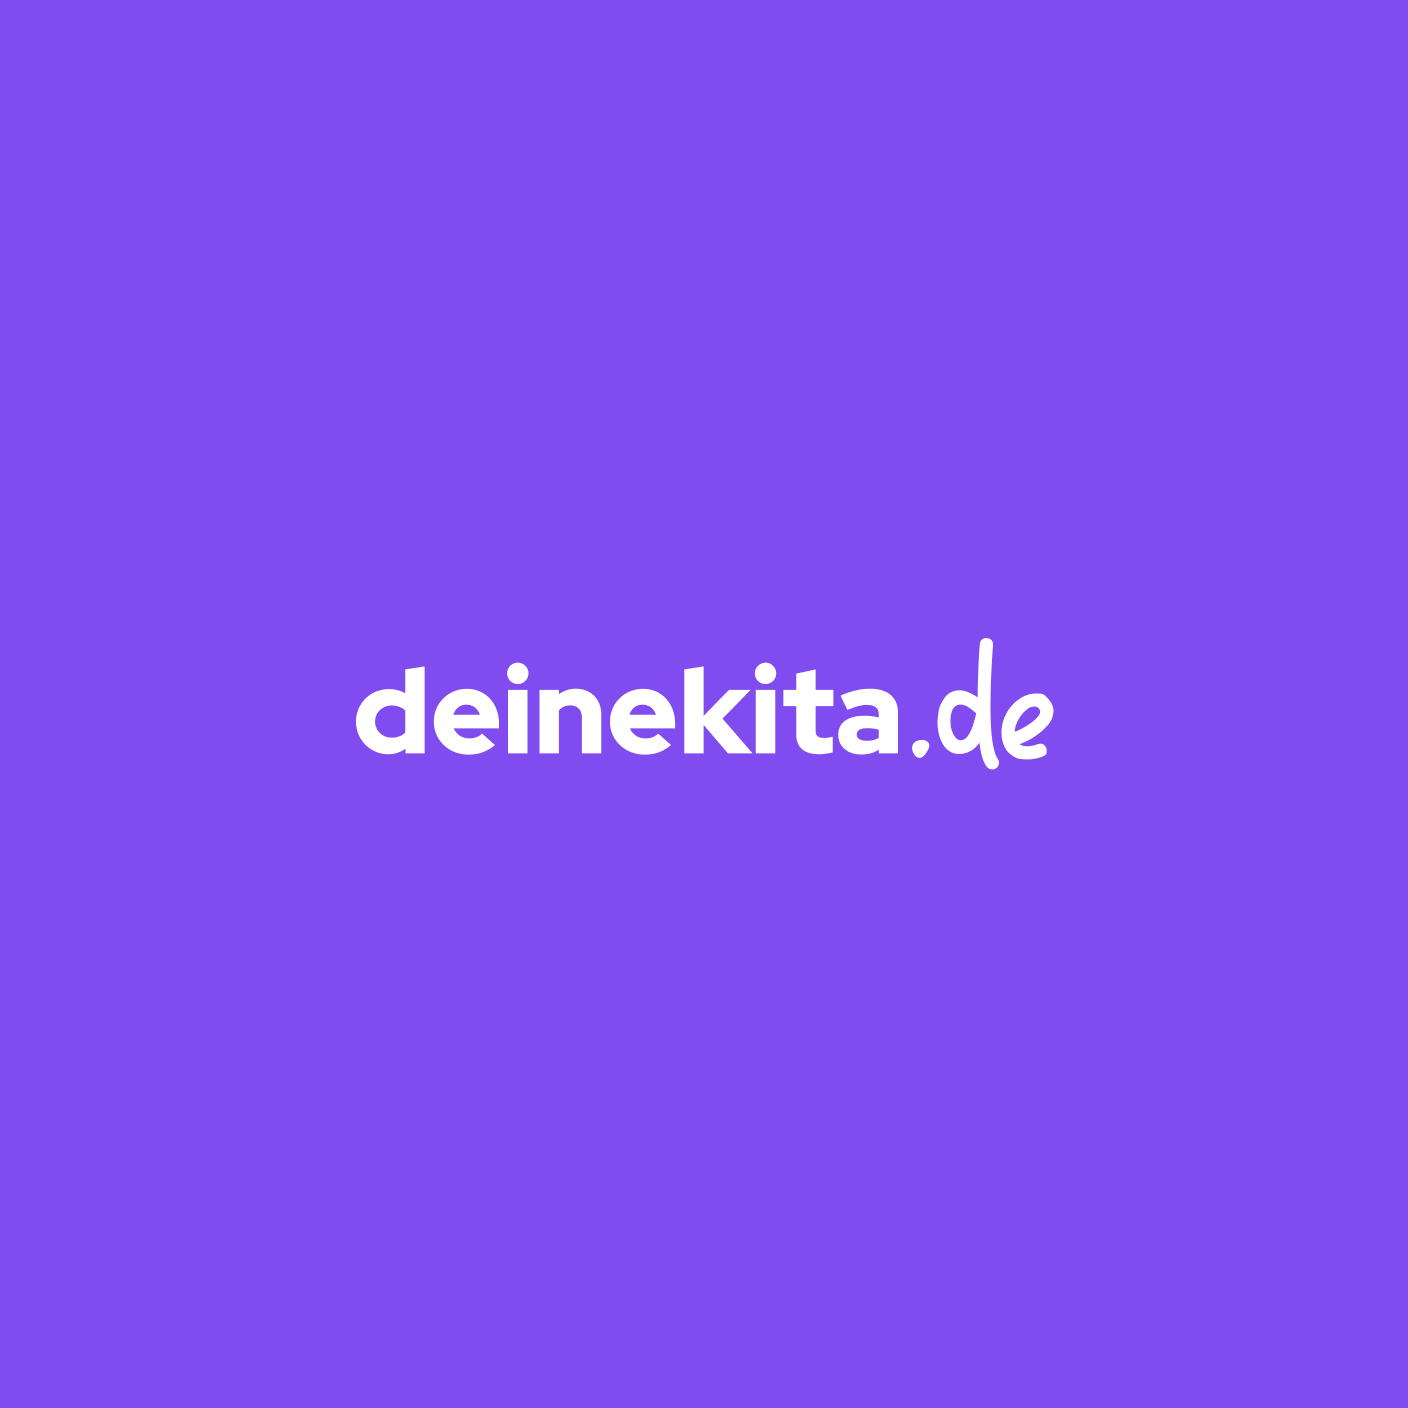 Logo von deinekitade-1706614516.png